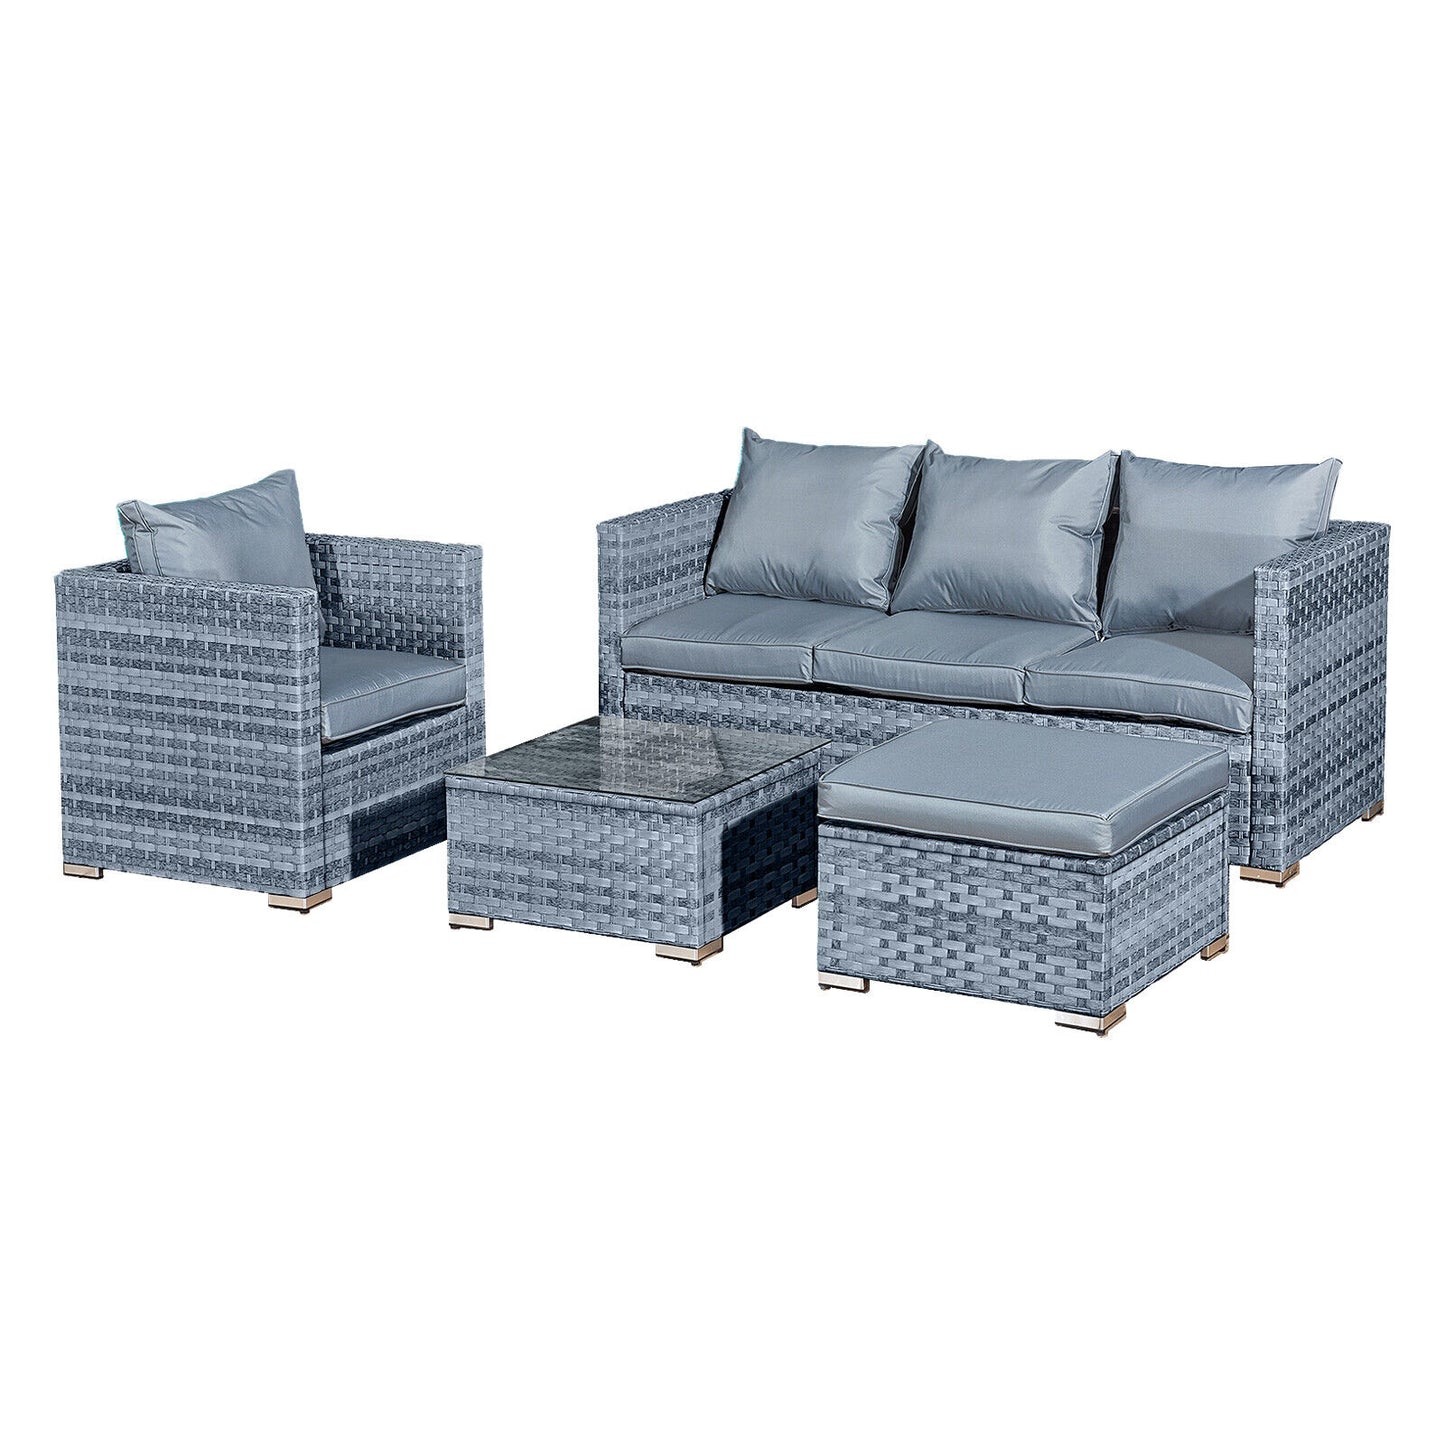 Acorn Rattan 5 Seat Lounge Sofa Set in Ocean Grey